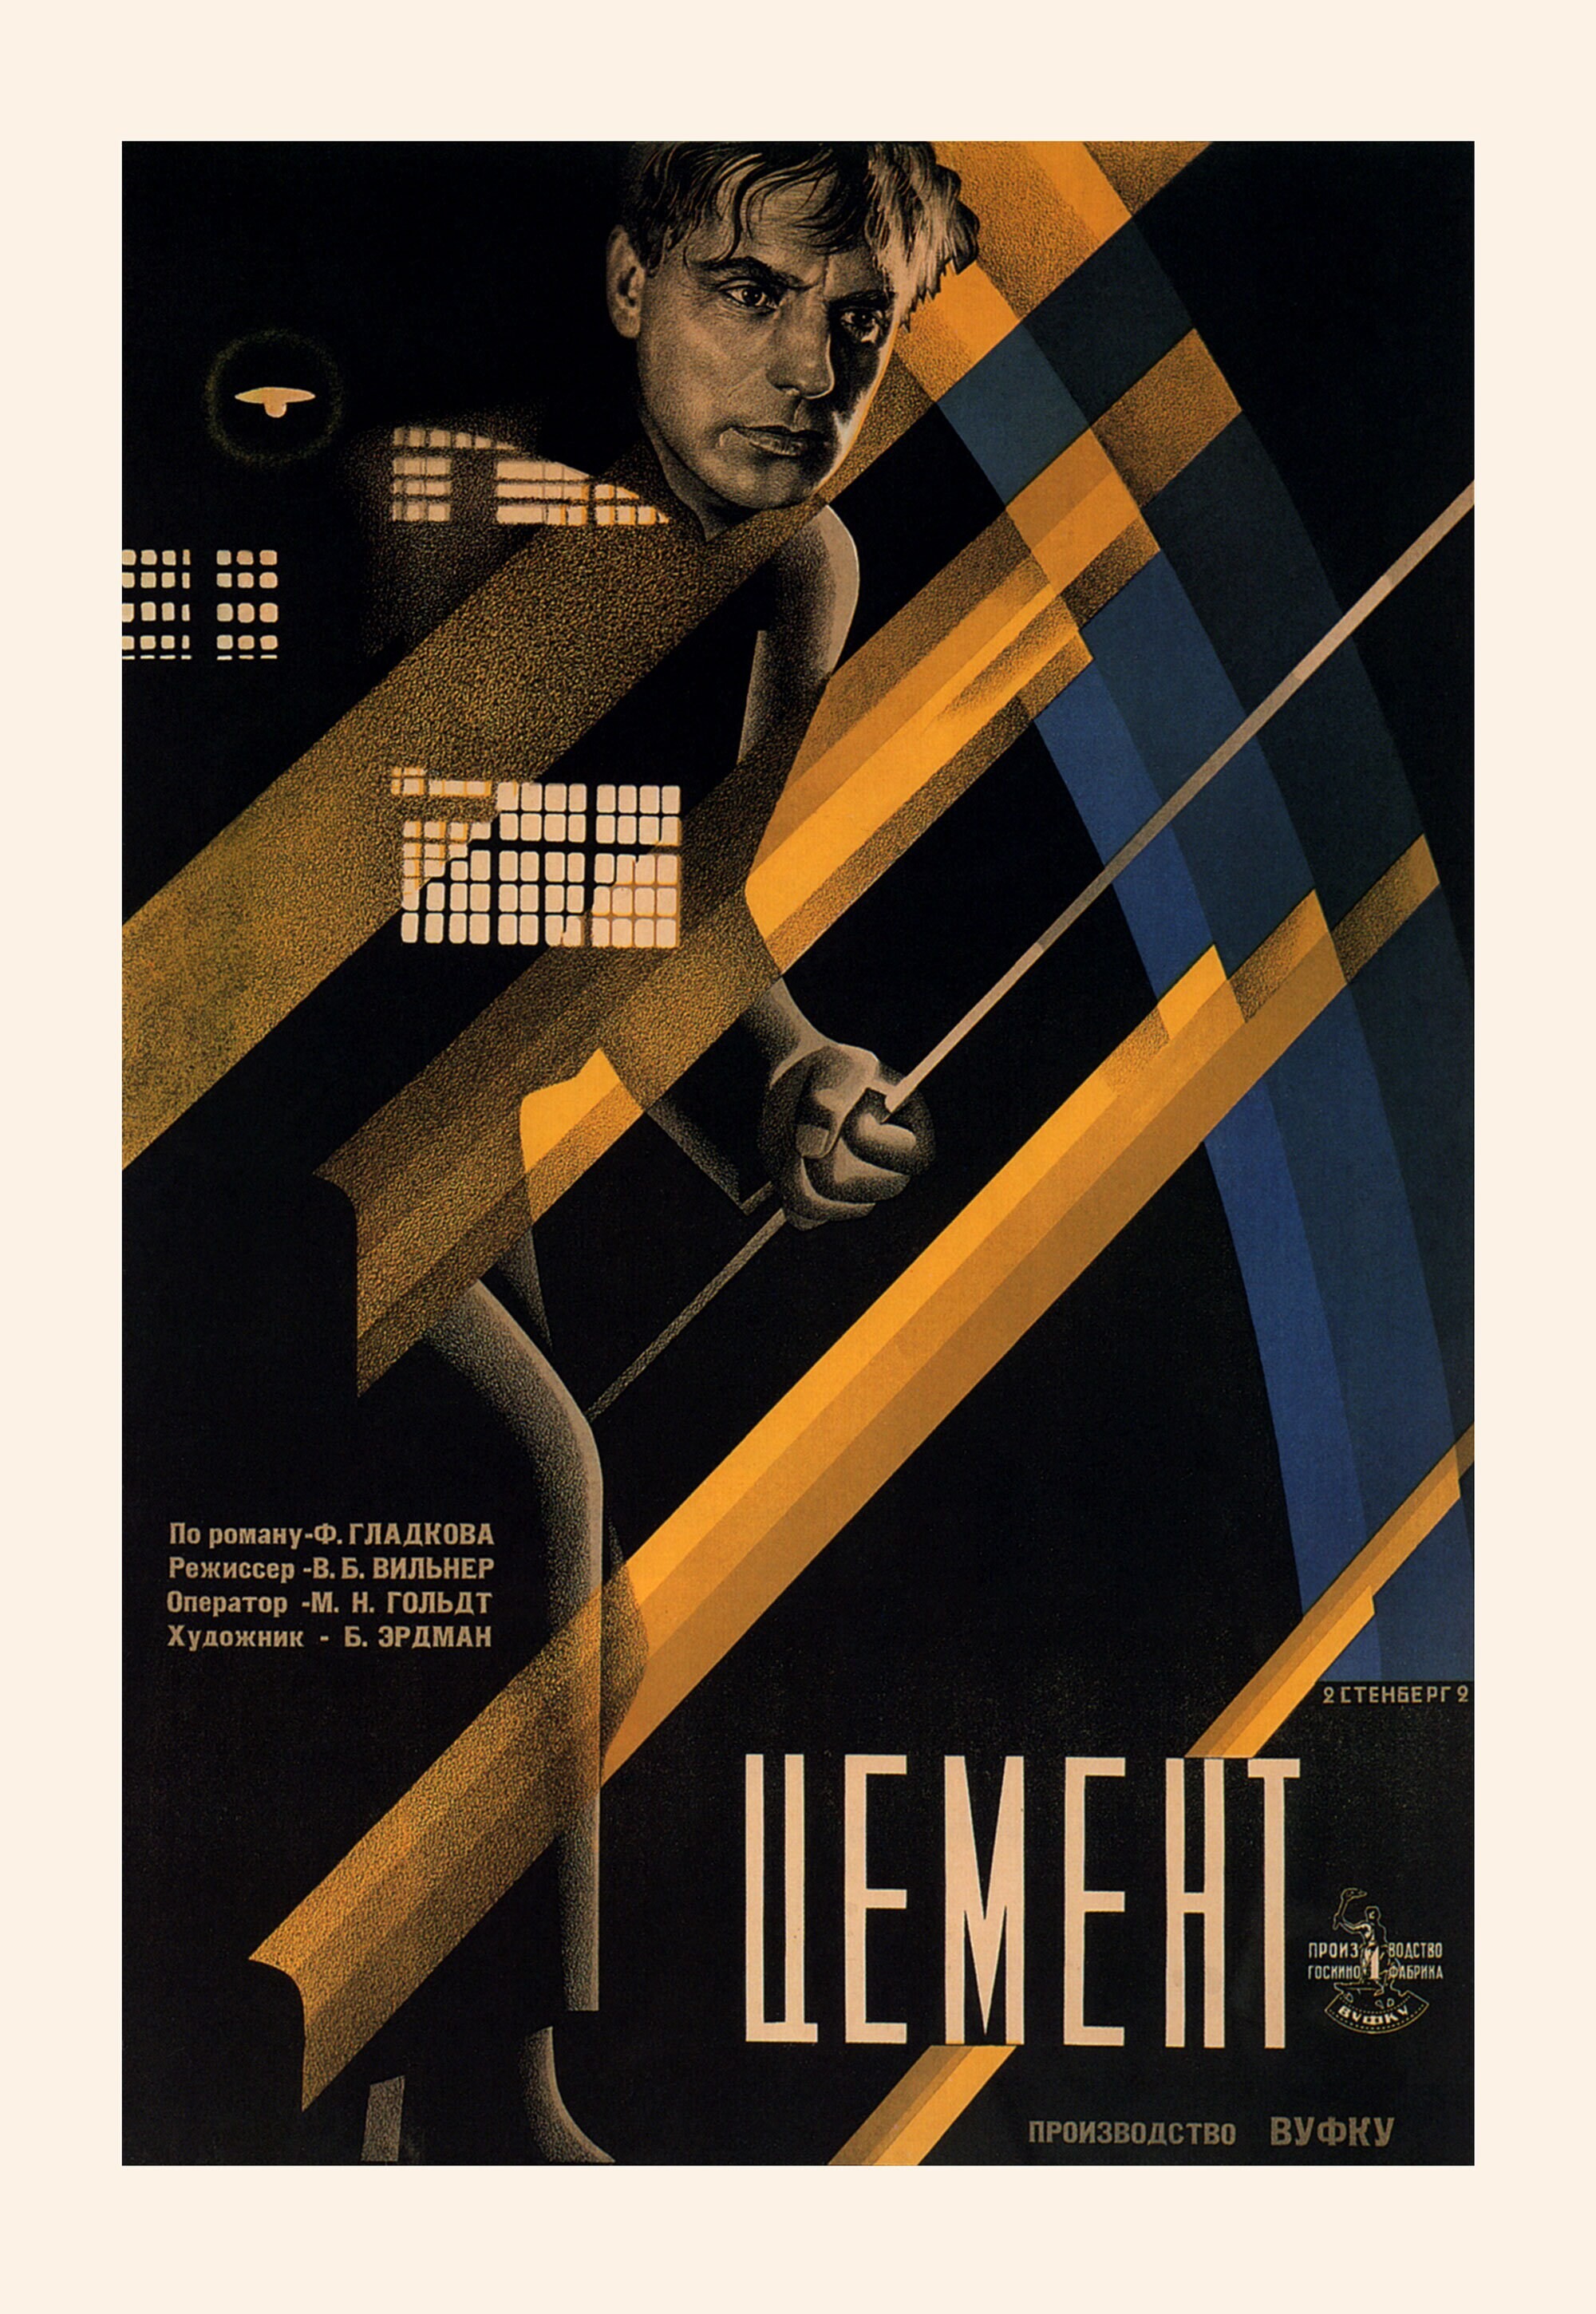 Цемент, 1927 год, режиссёр Владимир Вильнер, плакат к фильму, авторы Владимир и Георгий Стенберги (авангардное советское искусство, 1920-е)